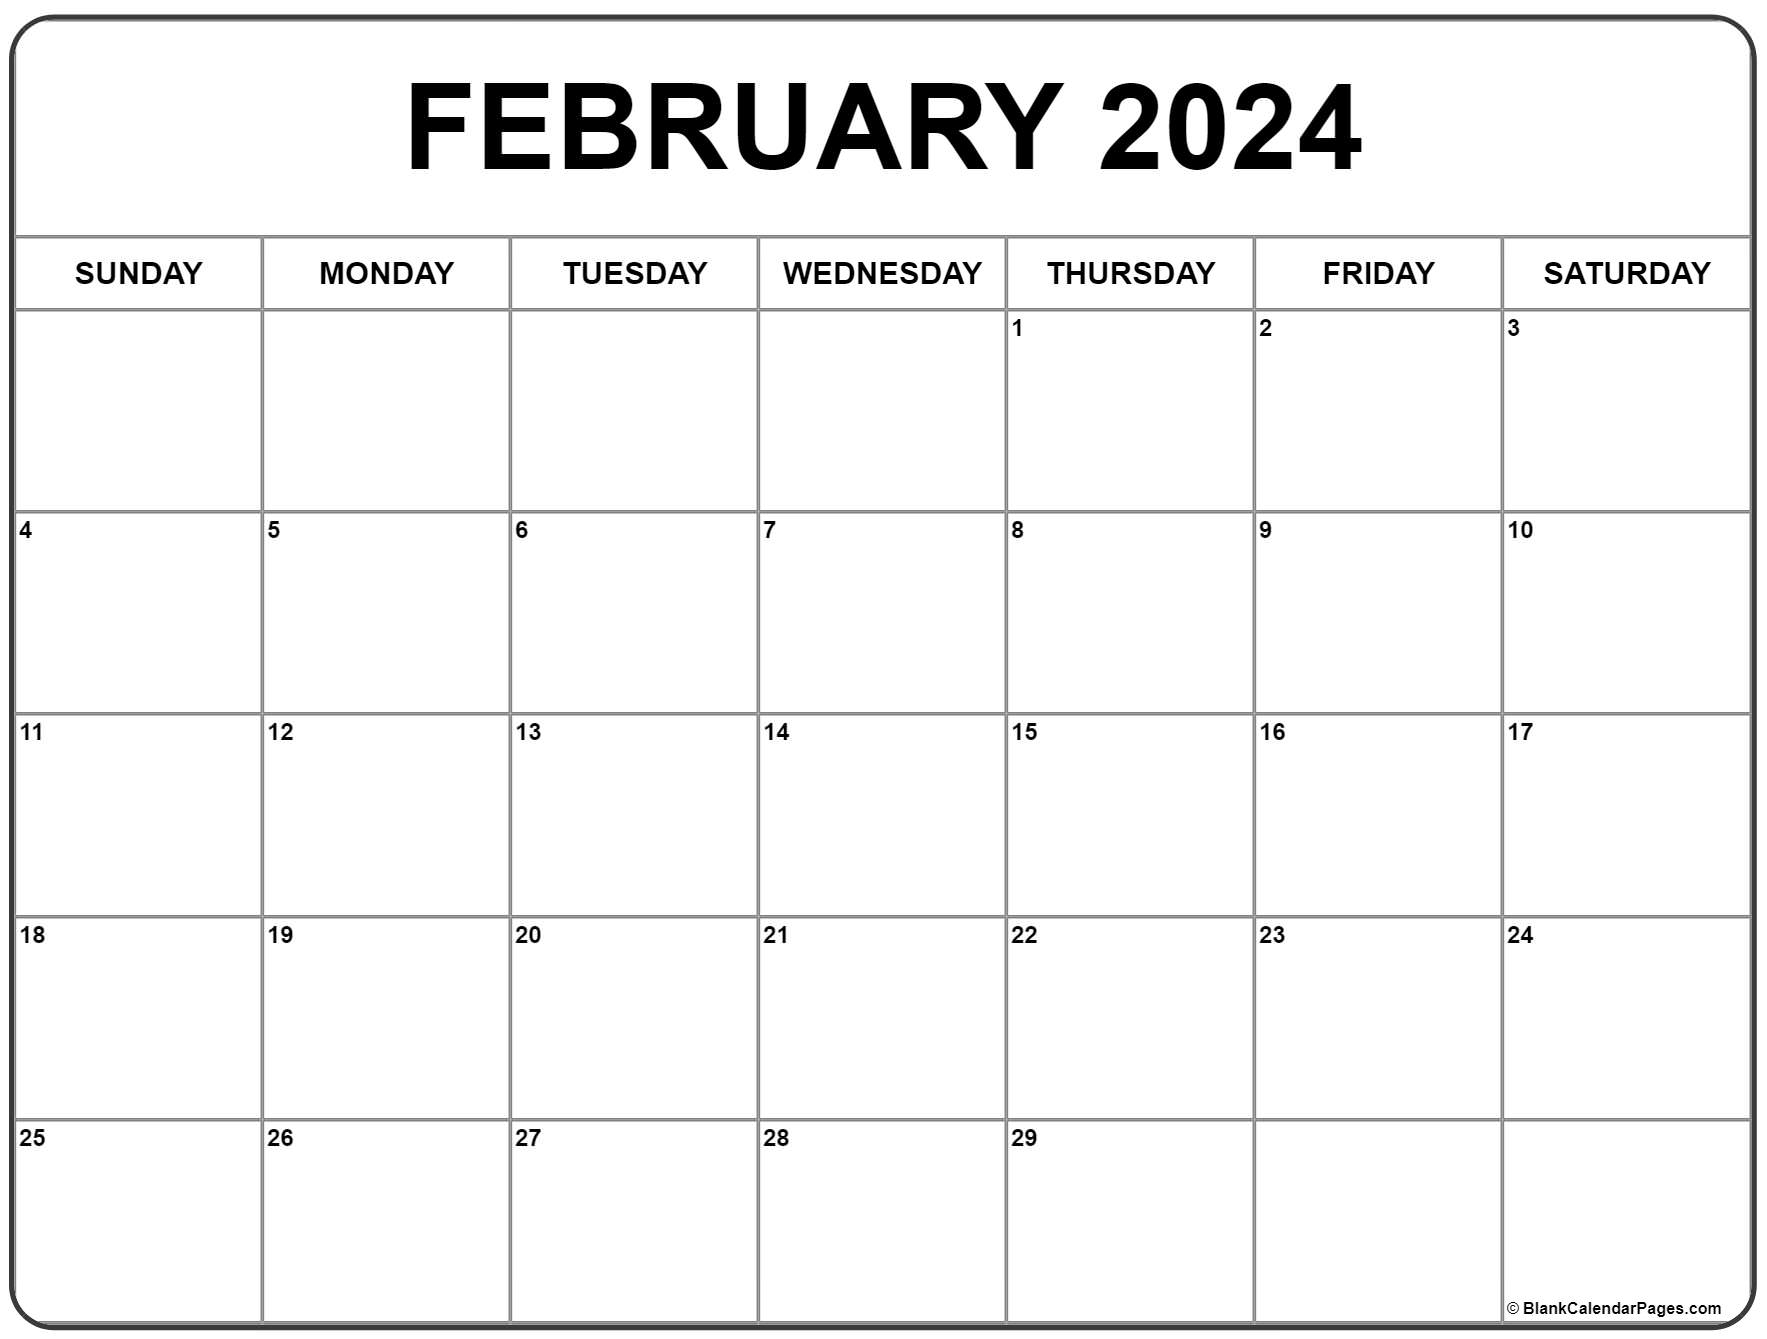 February 2024 Calendar | Free Printable Calendar for Printable Monthly Calendar 2024 February